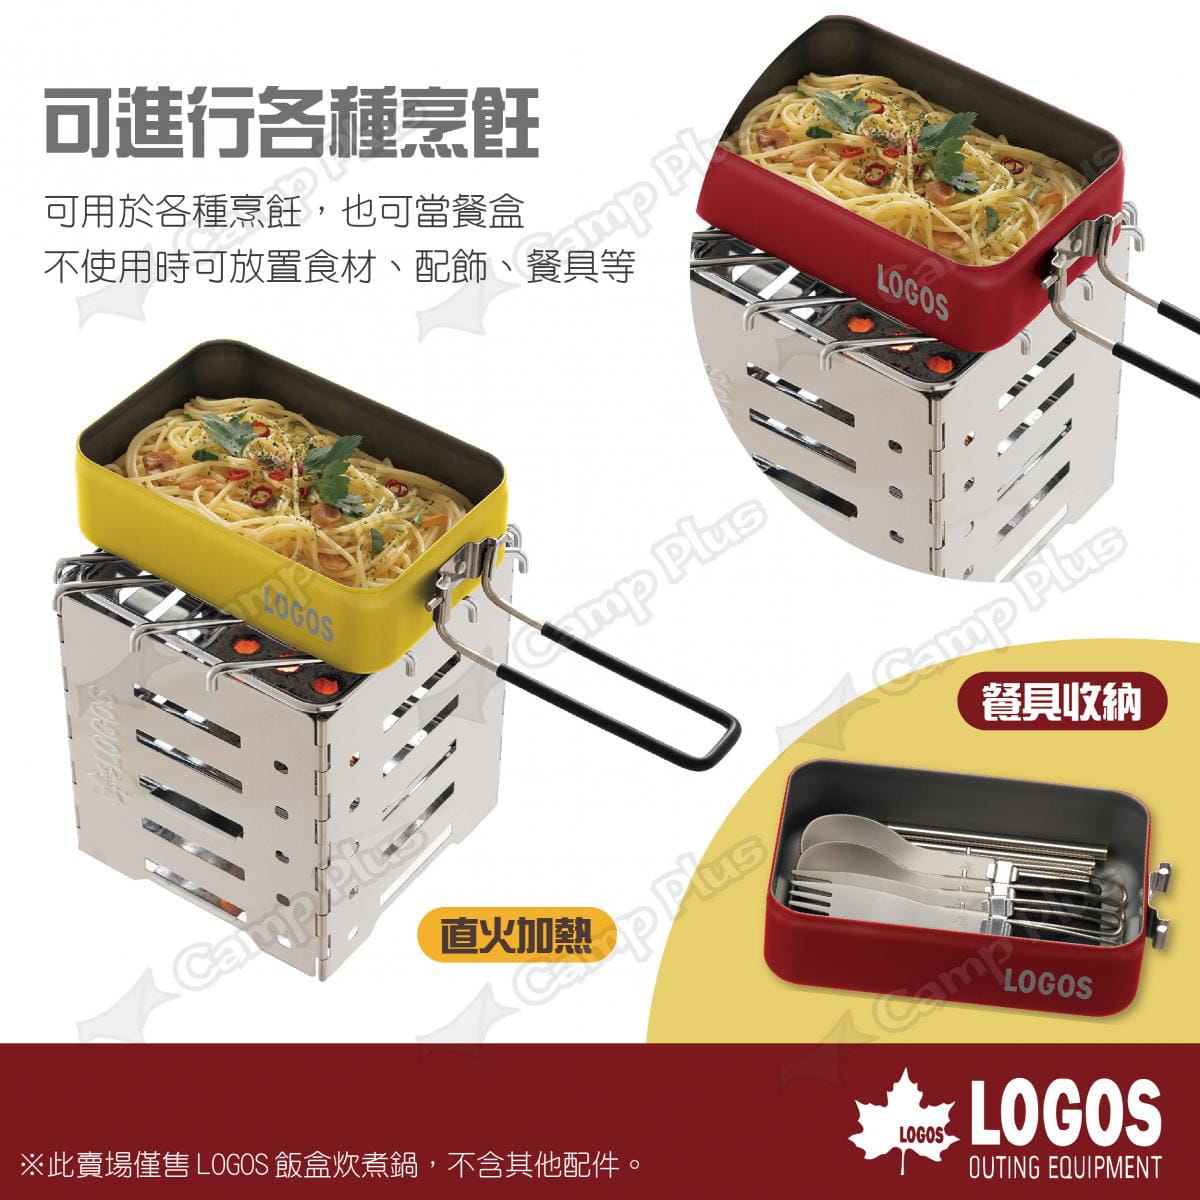 【LOGOS】飯盒炊煮鍋 多色可選 LG88230251~54 悠遊戶外 4